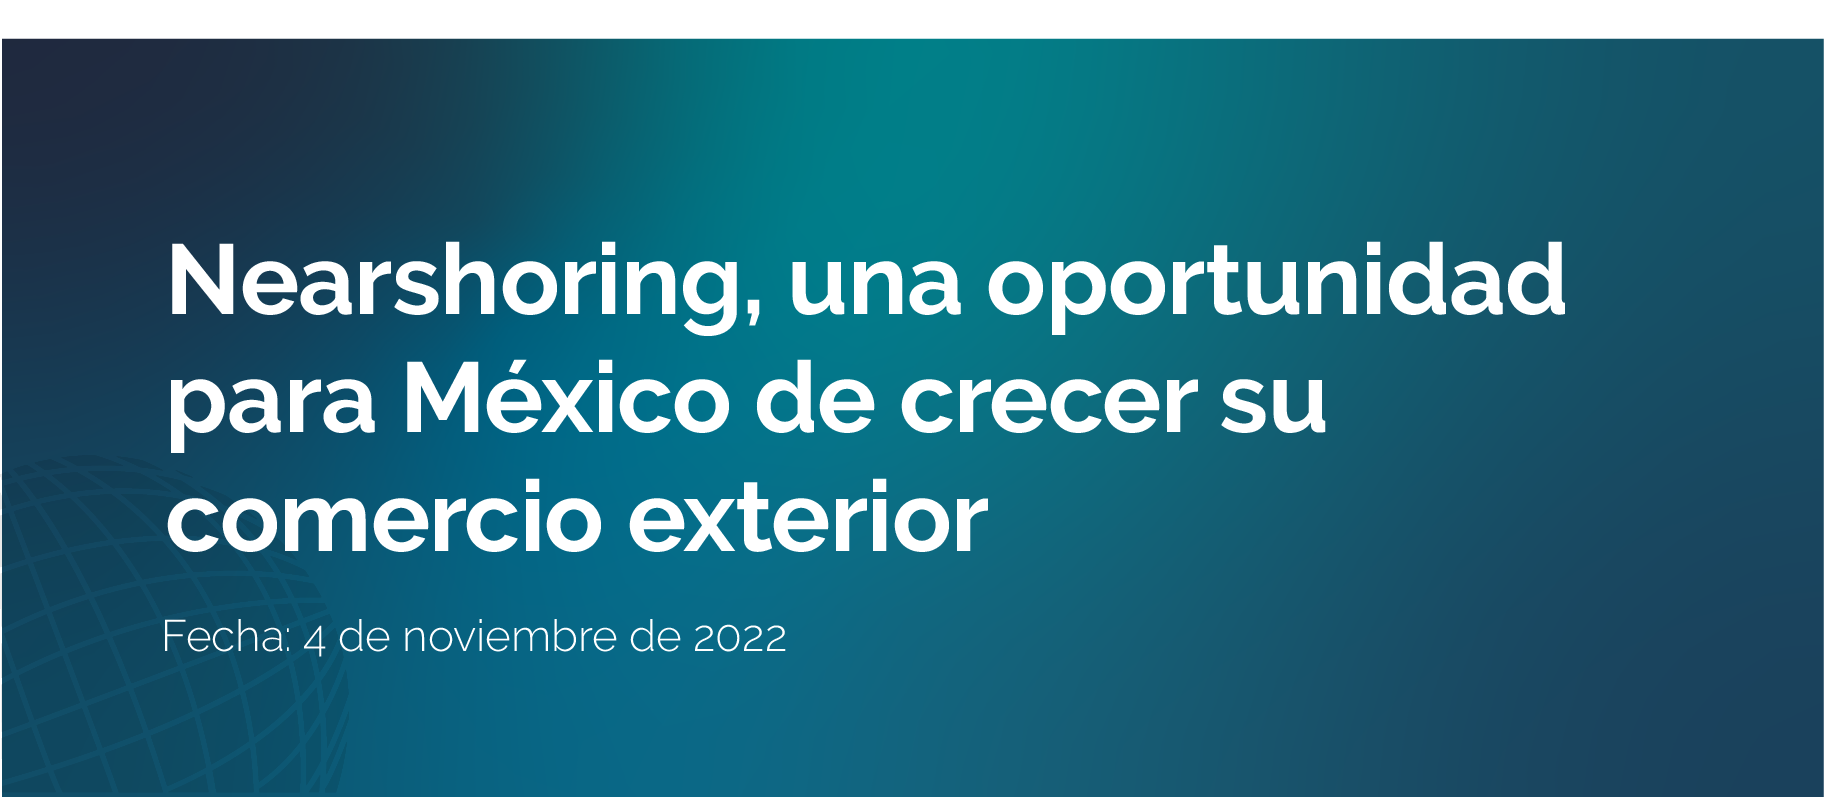 Nearshoring una oportunidad para Mexico de crecer su comercio exterior